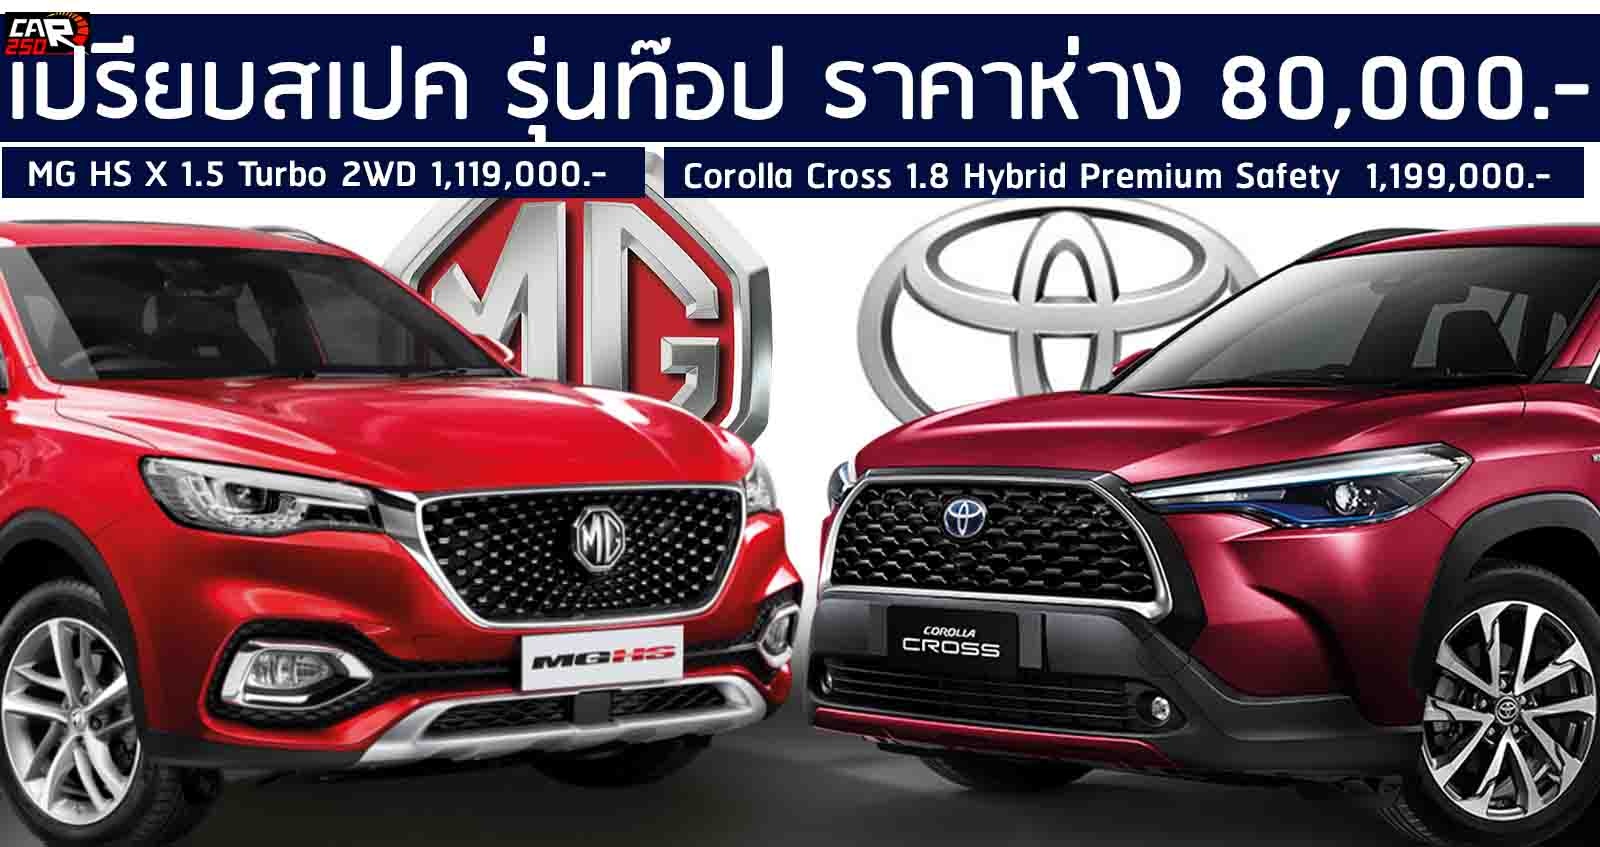 เปรียบสเปค Toyota Corolla Cross Vs MG HS รุ่นท๊อป ราคาห่าง 80,000 บาท